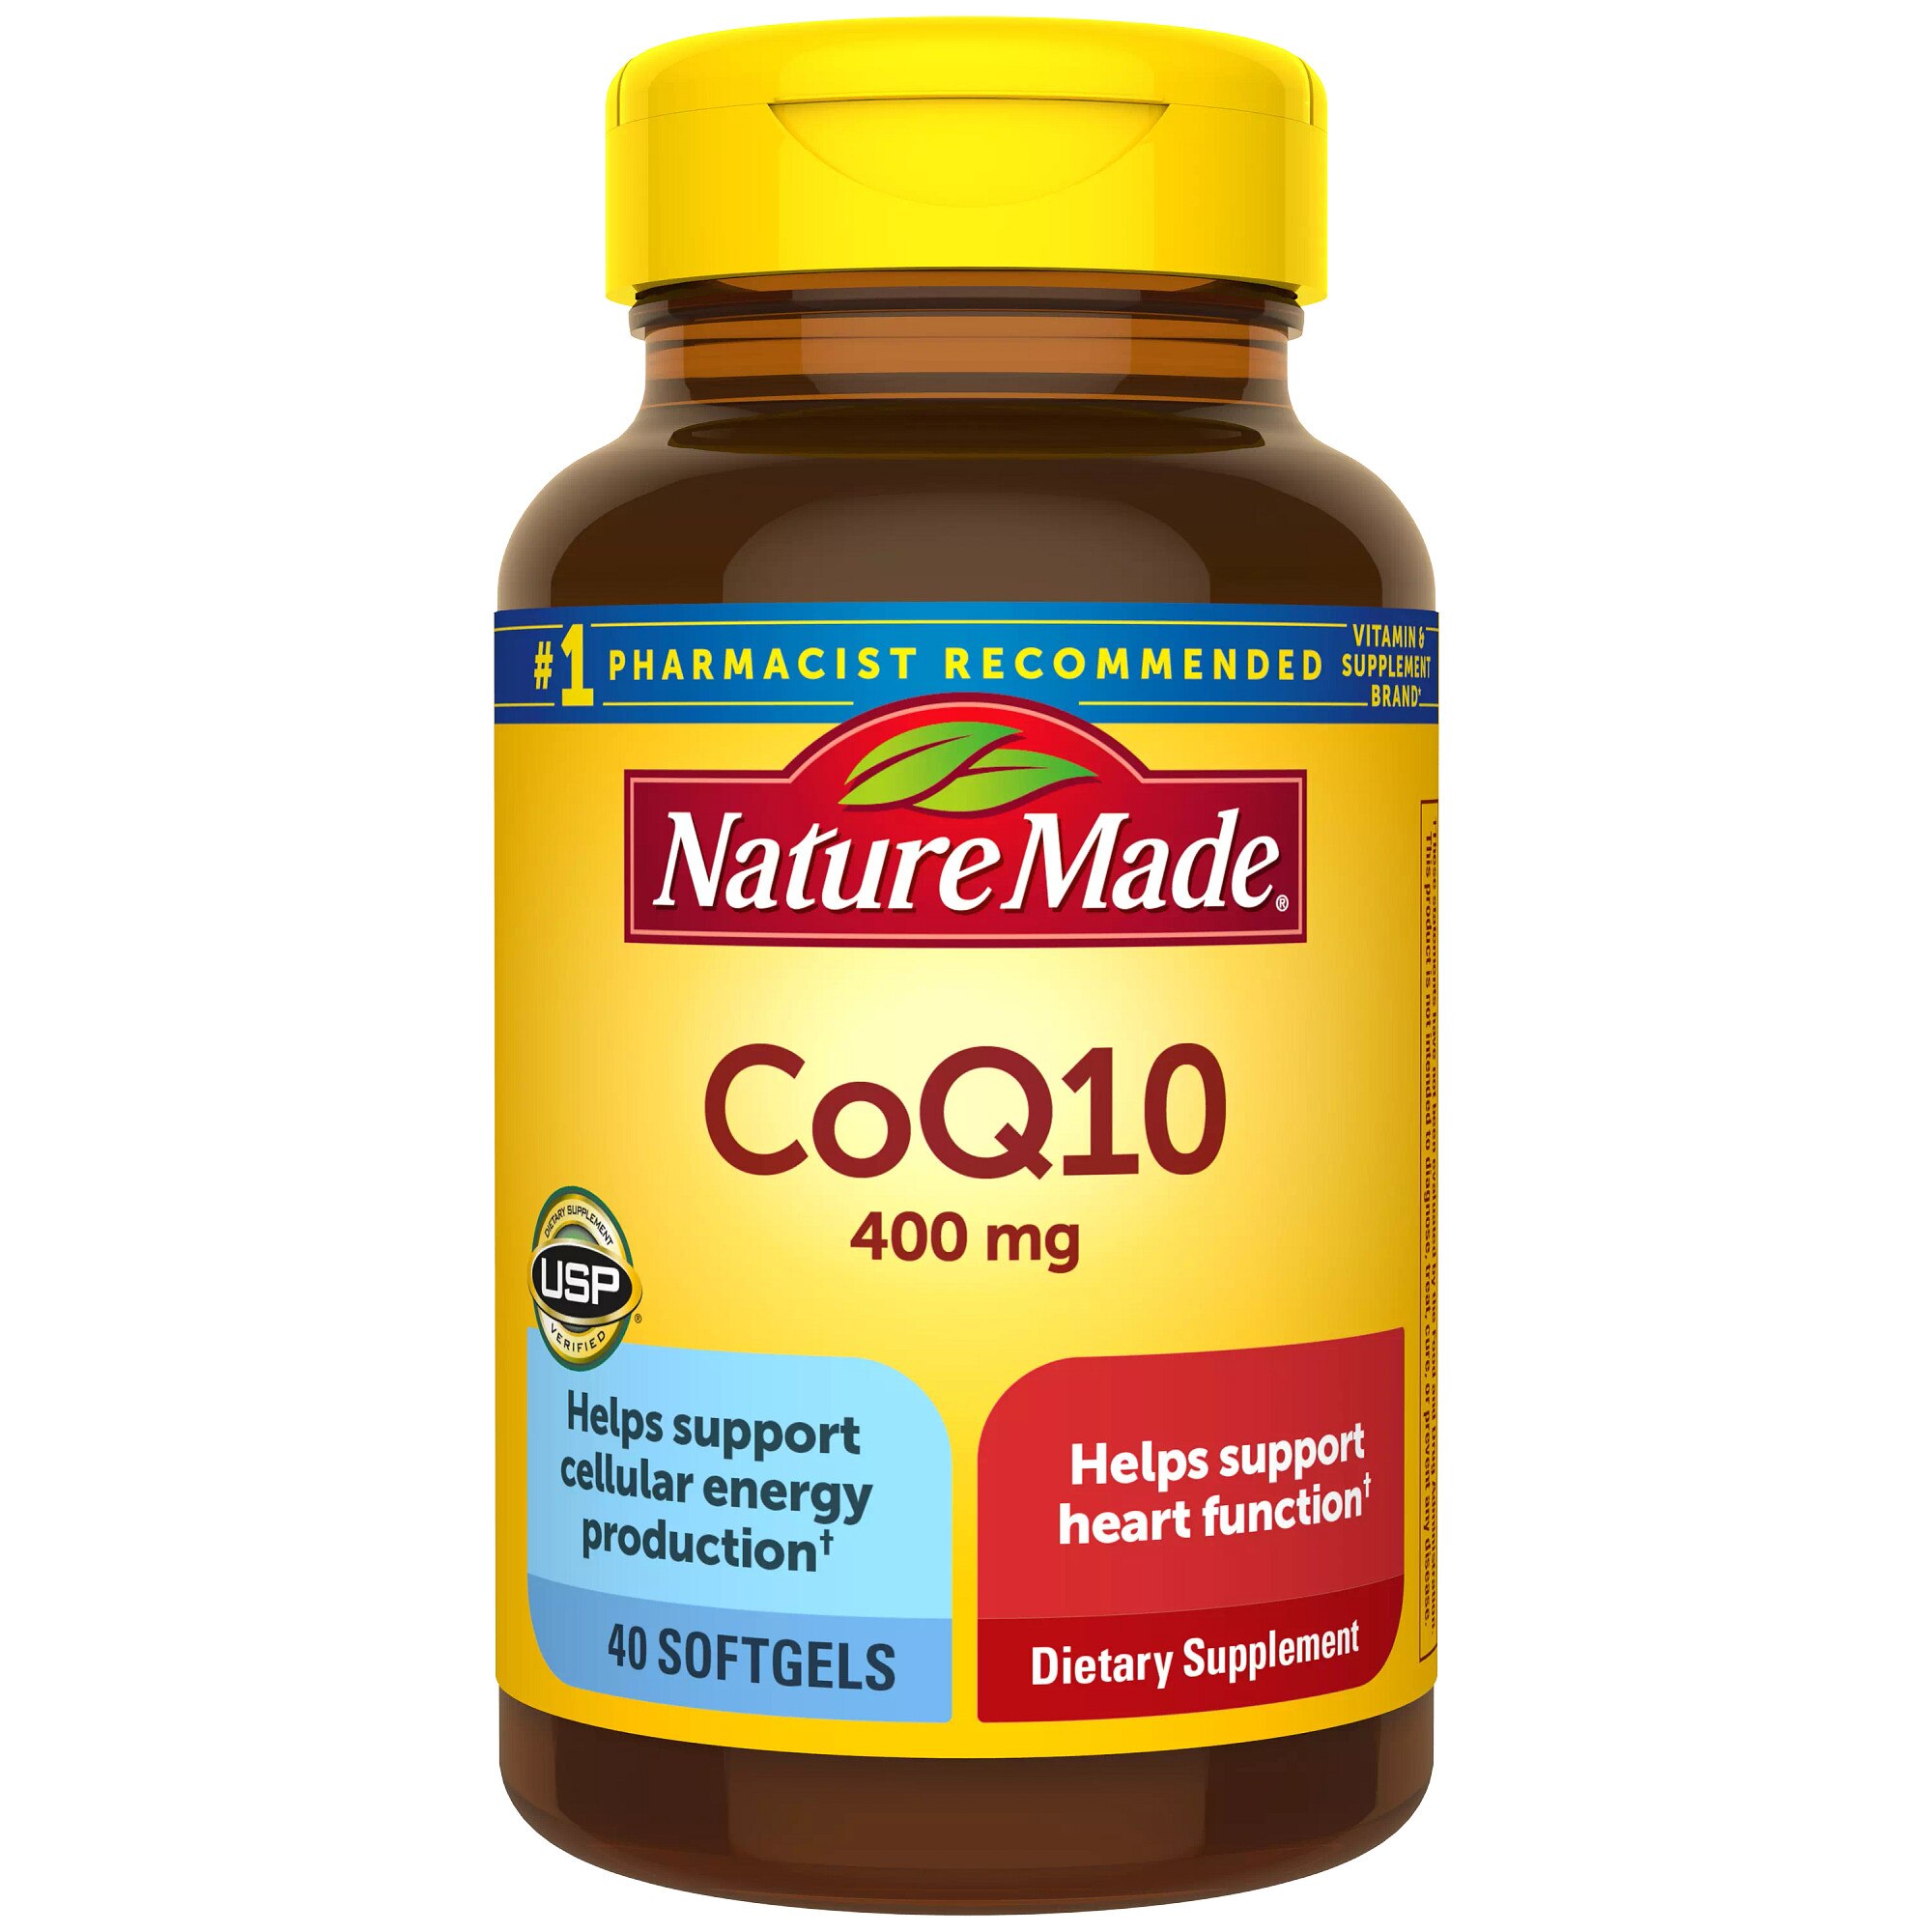 Nature Made CoQ10 400 mg Softgels, 40 CT